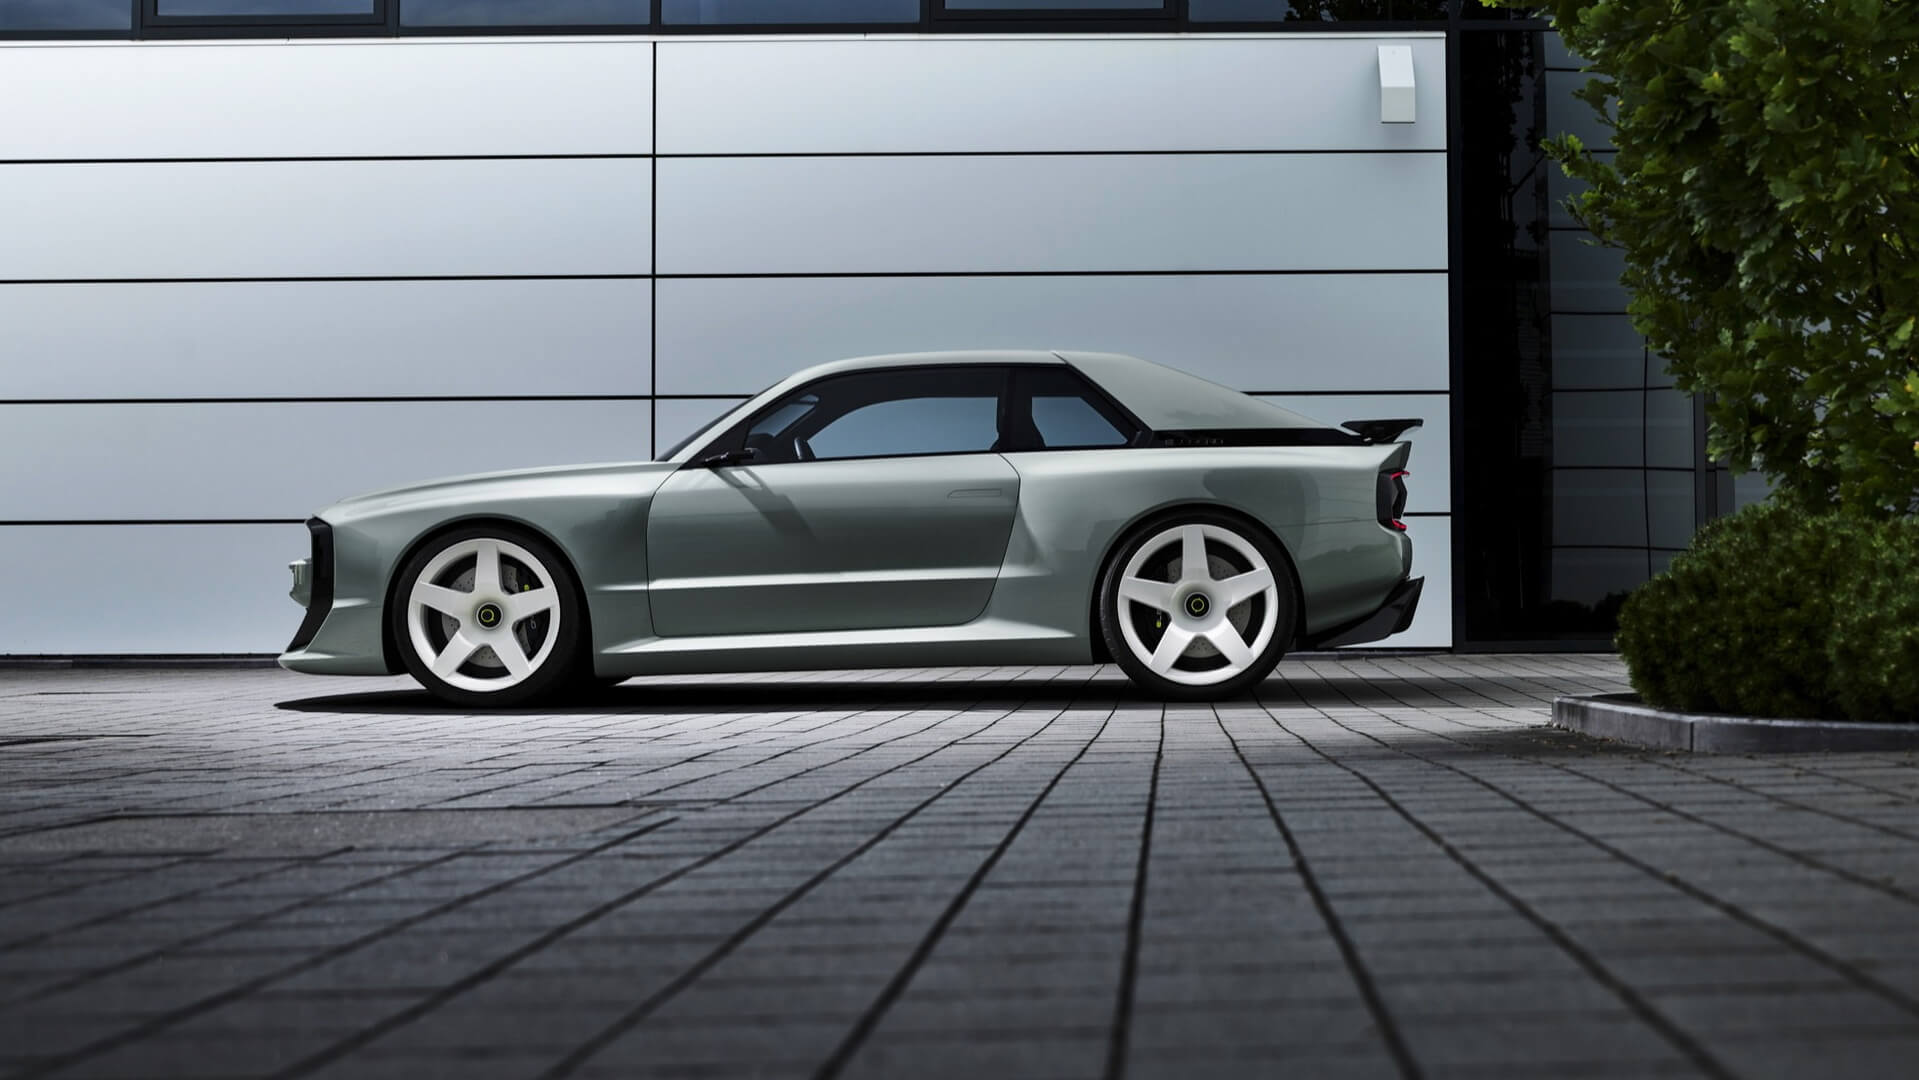 EL1 создан как переосмысление легенды ралли Audi Sport Quattro эпохи ралли группы B